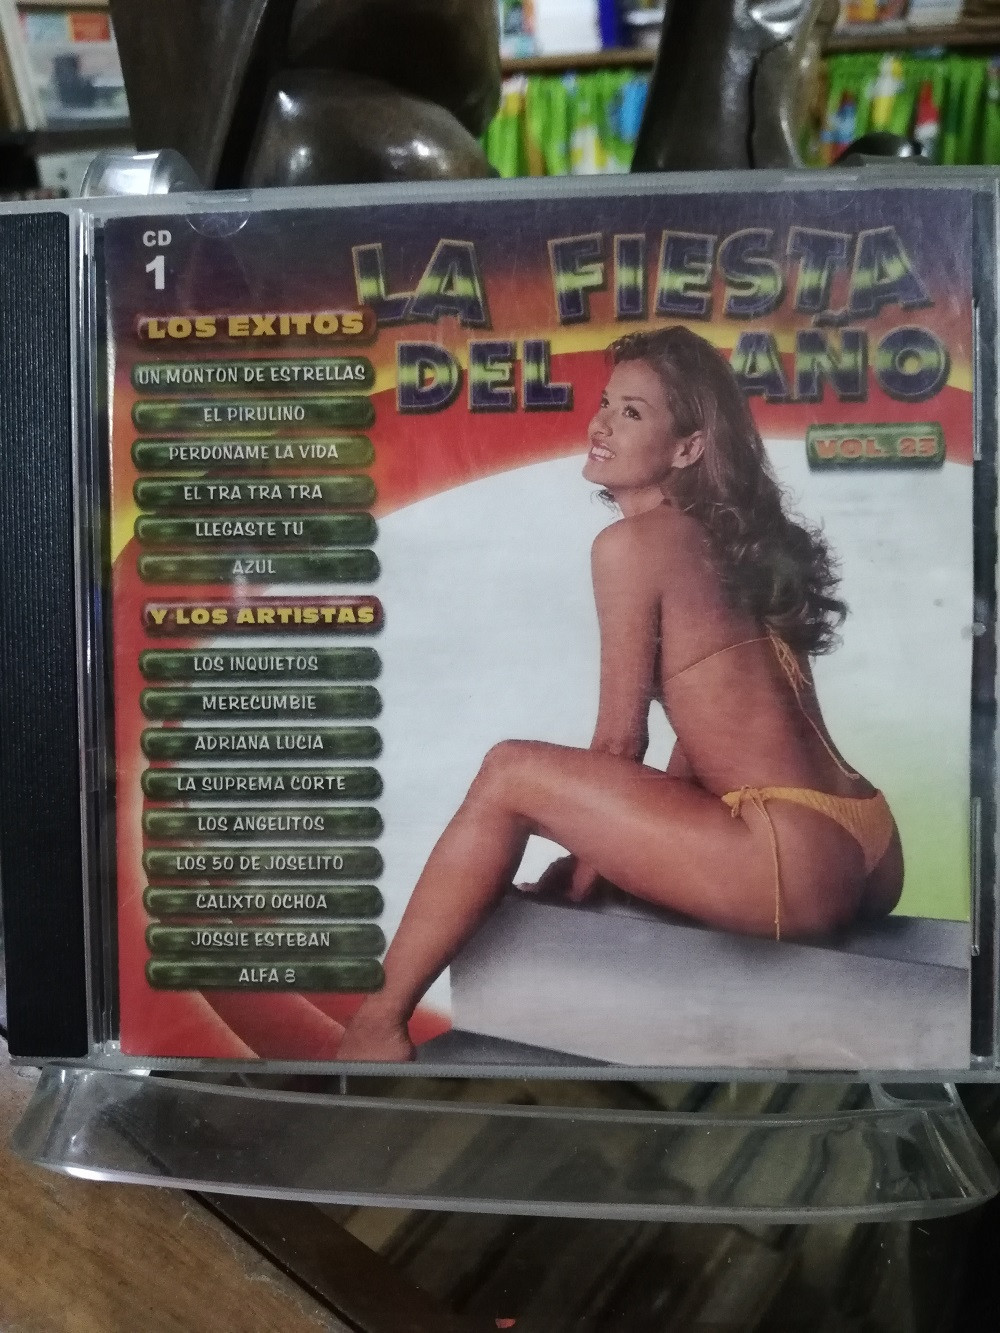 Imagen CD LA FIESTA DEL AÑO - LA FIESTA DEL AÑO VOL. 23